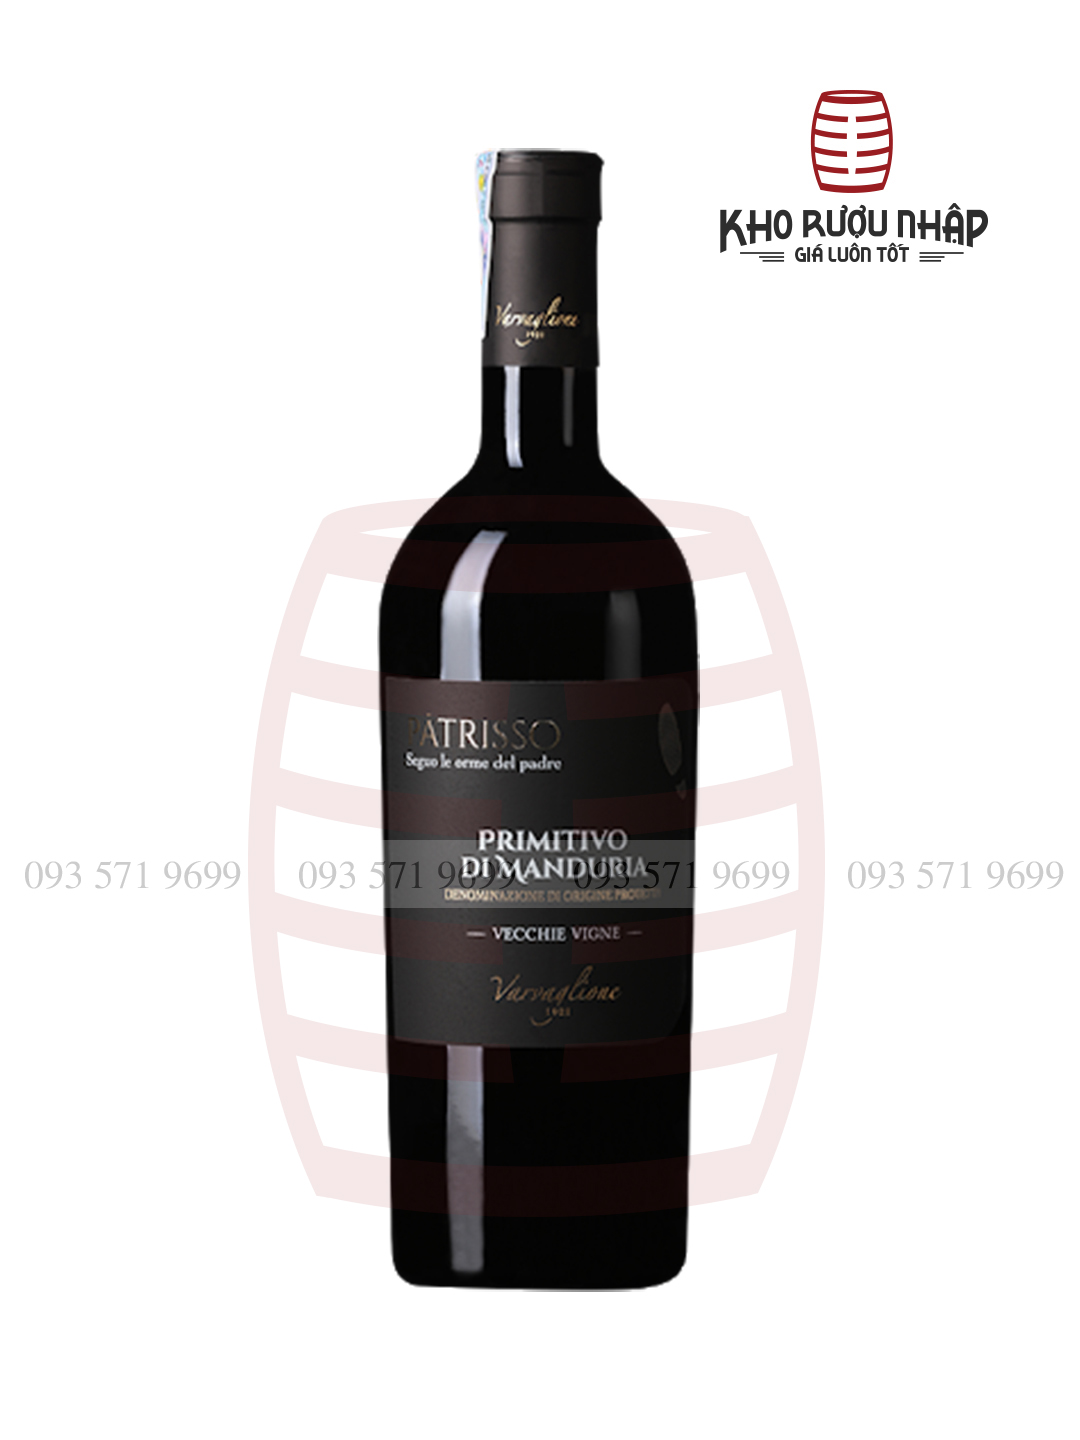 Rượu vang Patrisso Primitivo di Manduria chính hãng – NIE – 3000